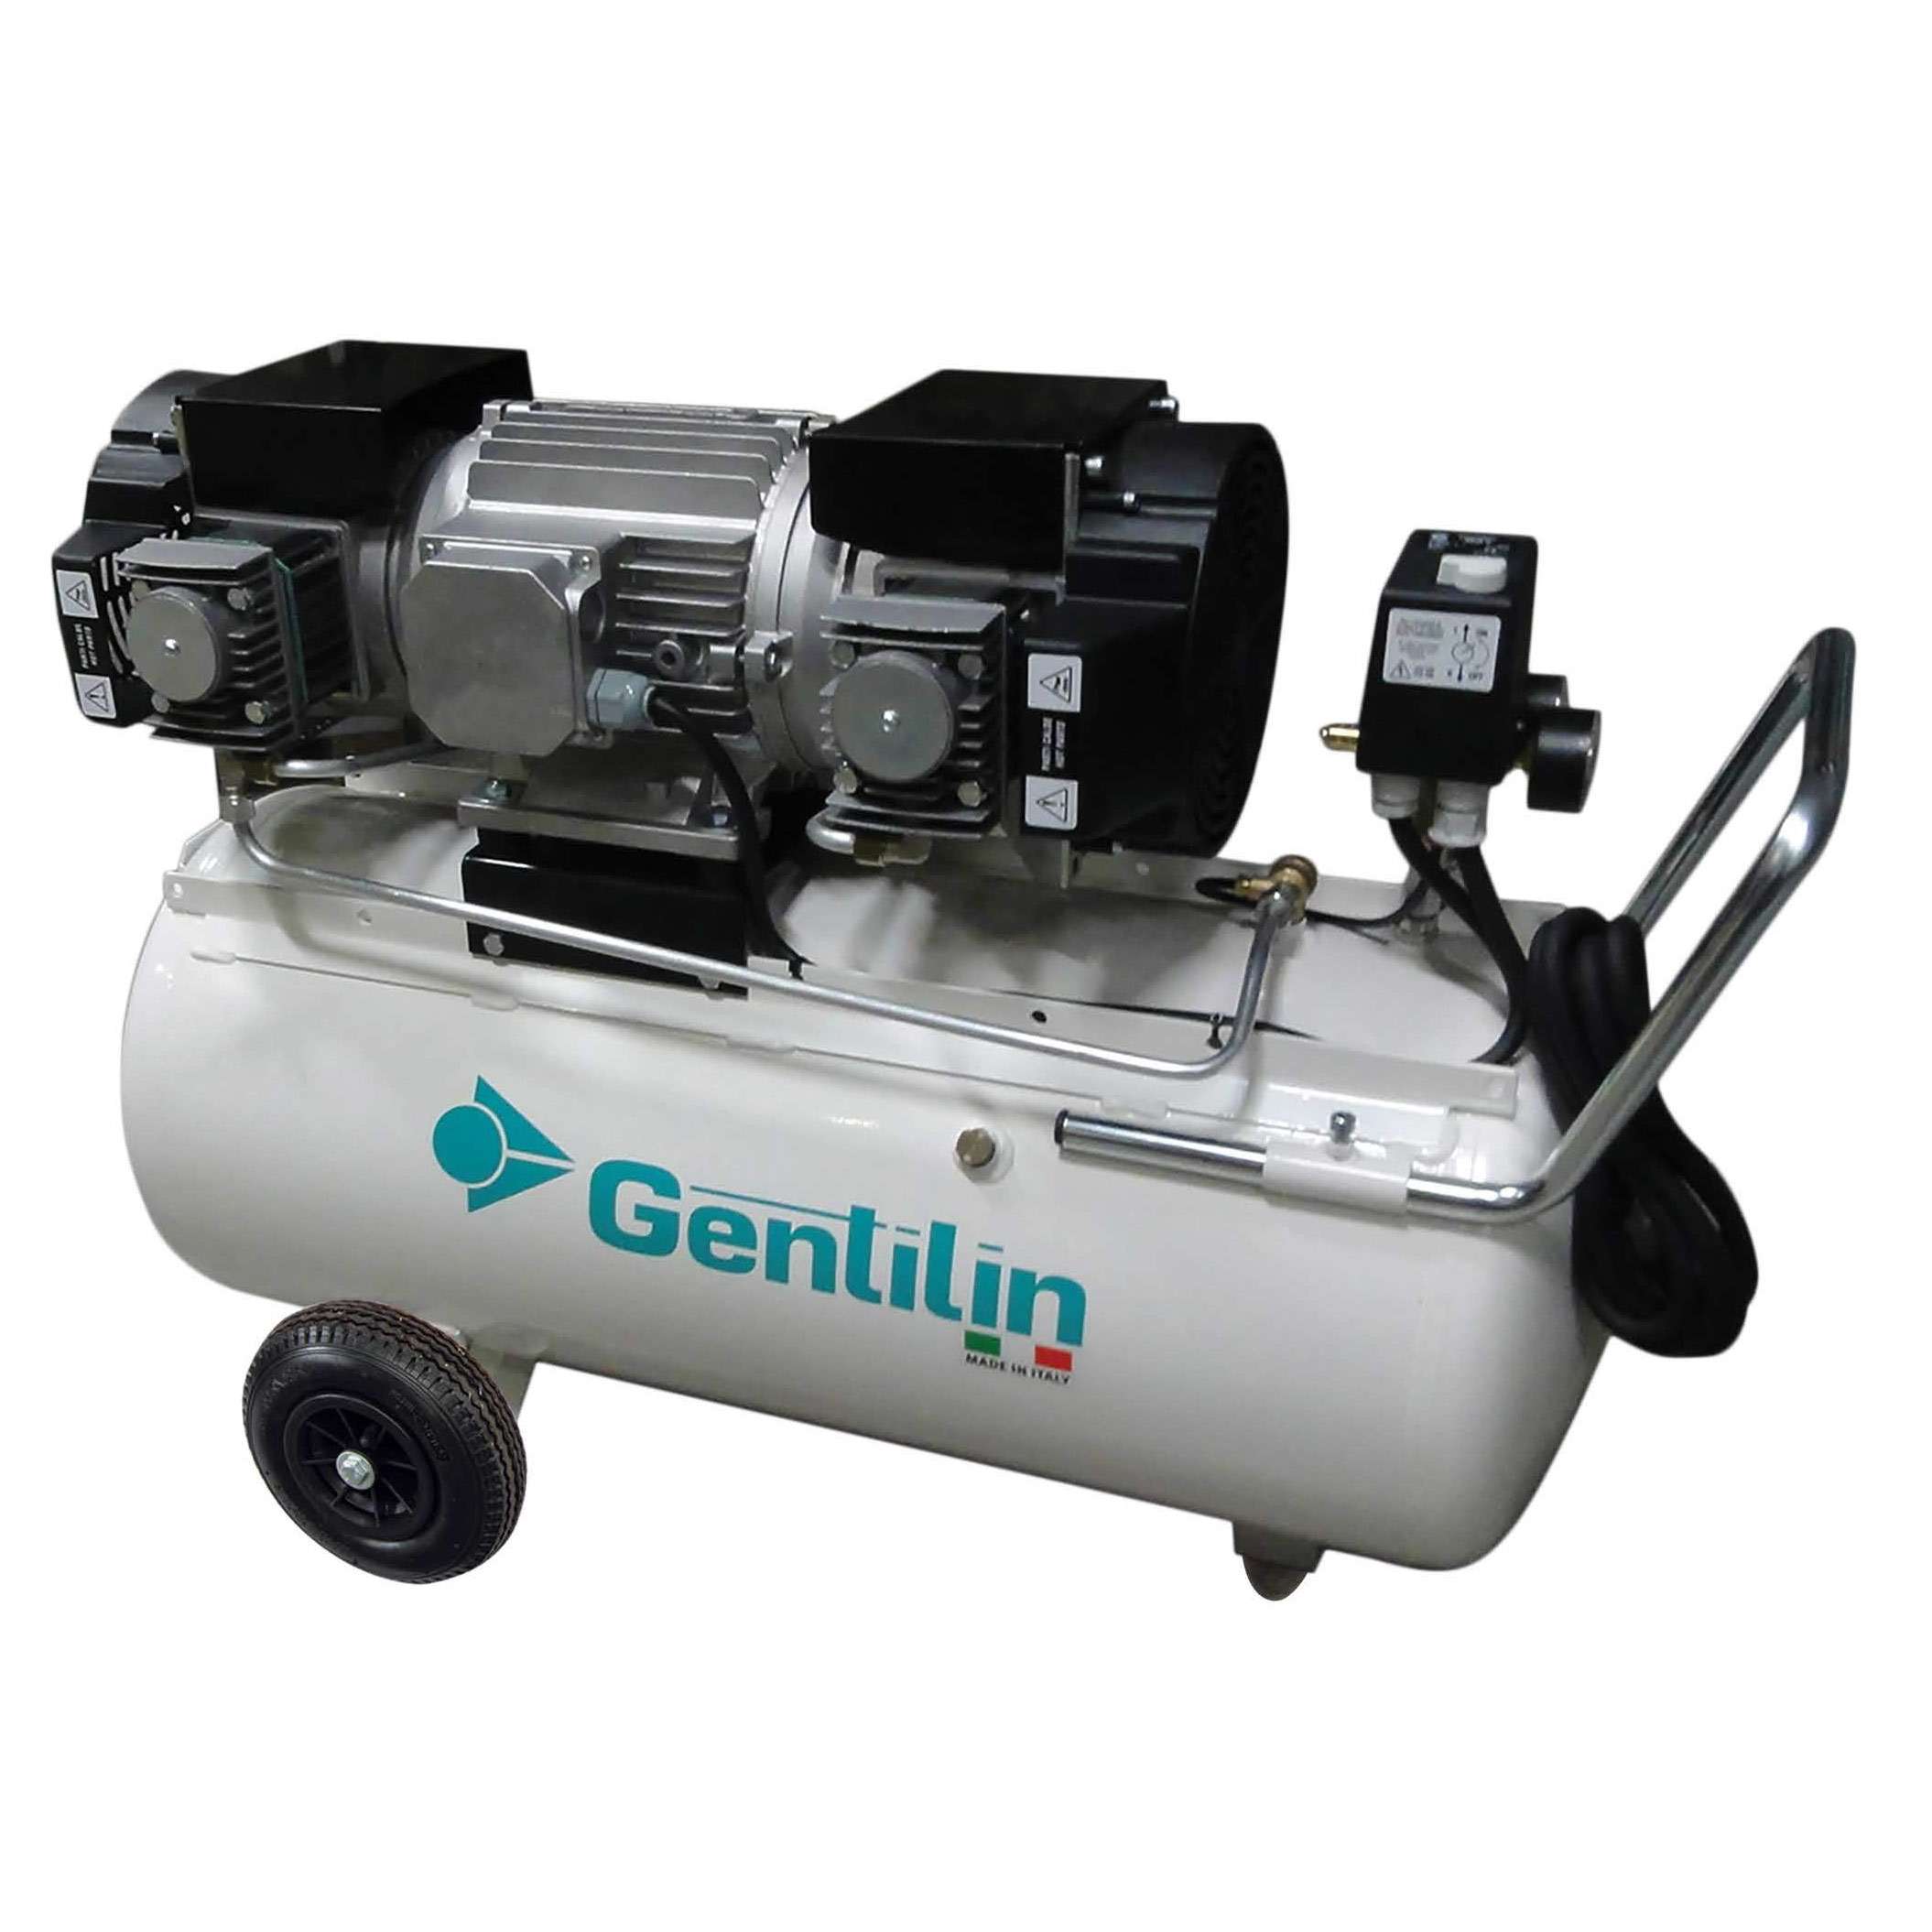 Gentilin Kompressoren - Ihr Kompressor I DF Druckluft-Fachhandel